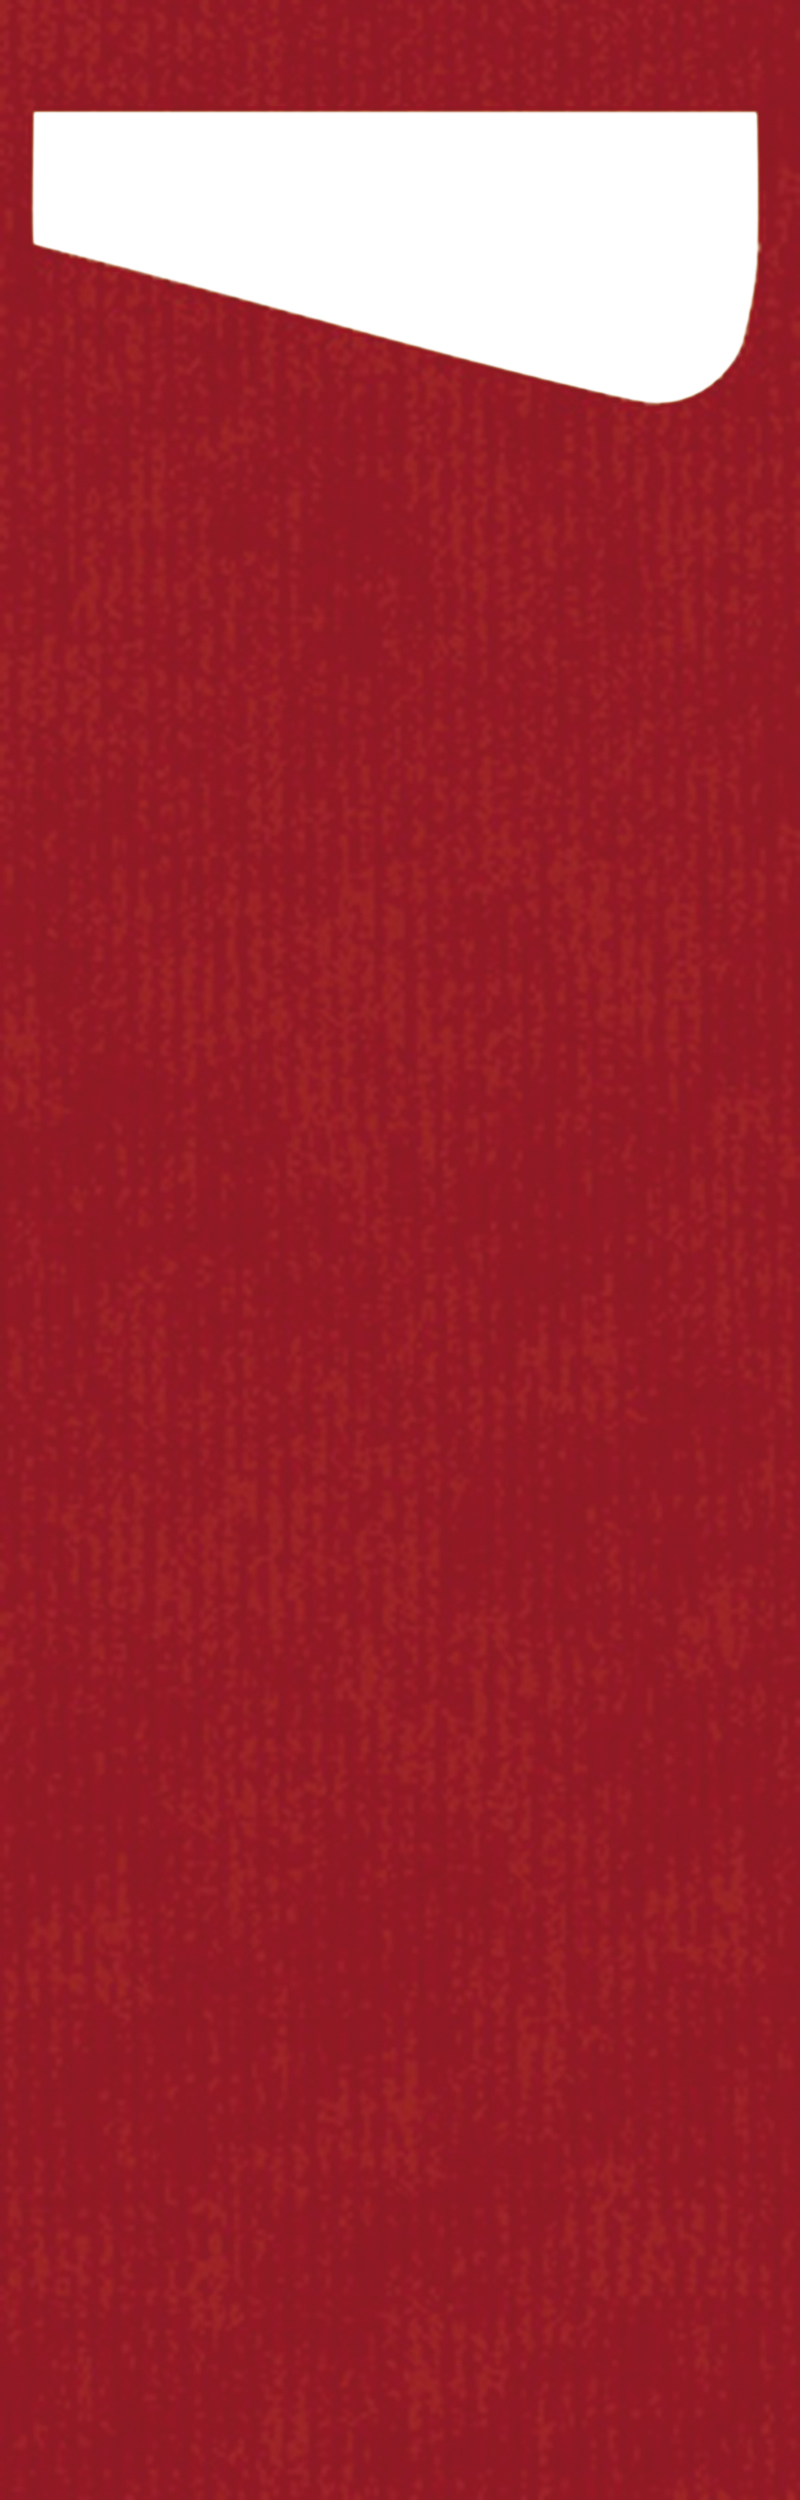 61757 Sacchetto slim rood servet wit 4x60 st